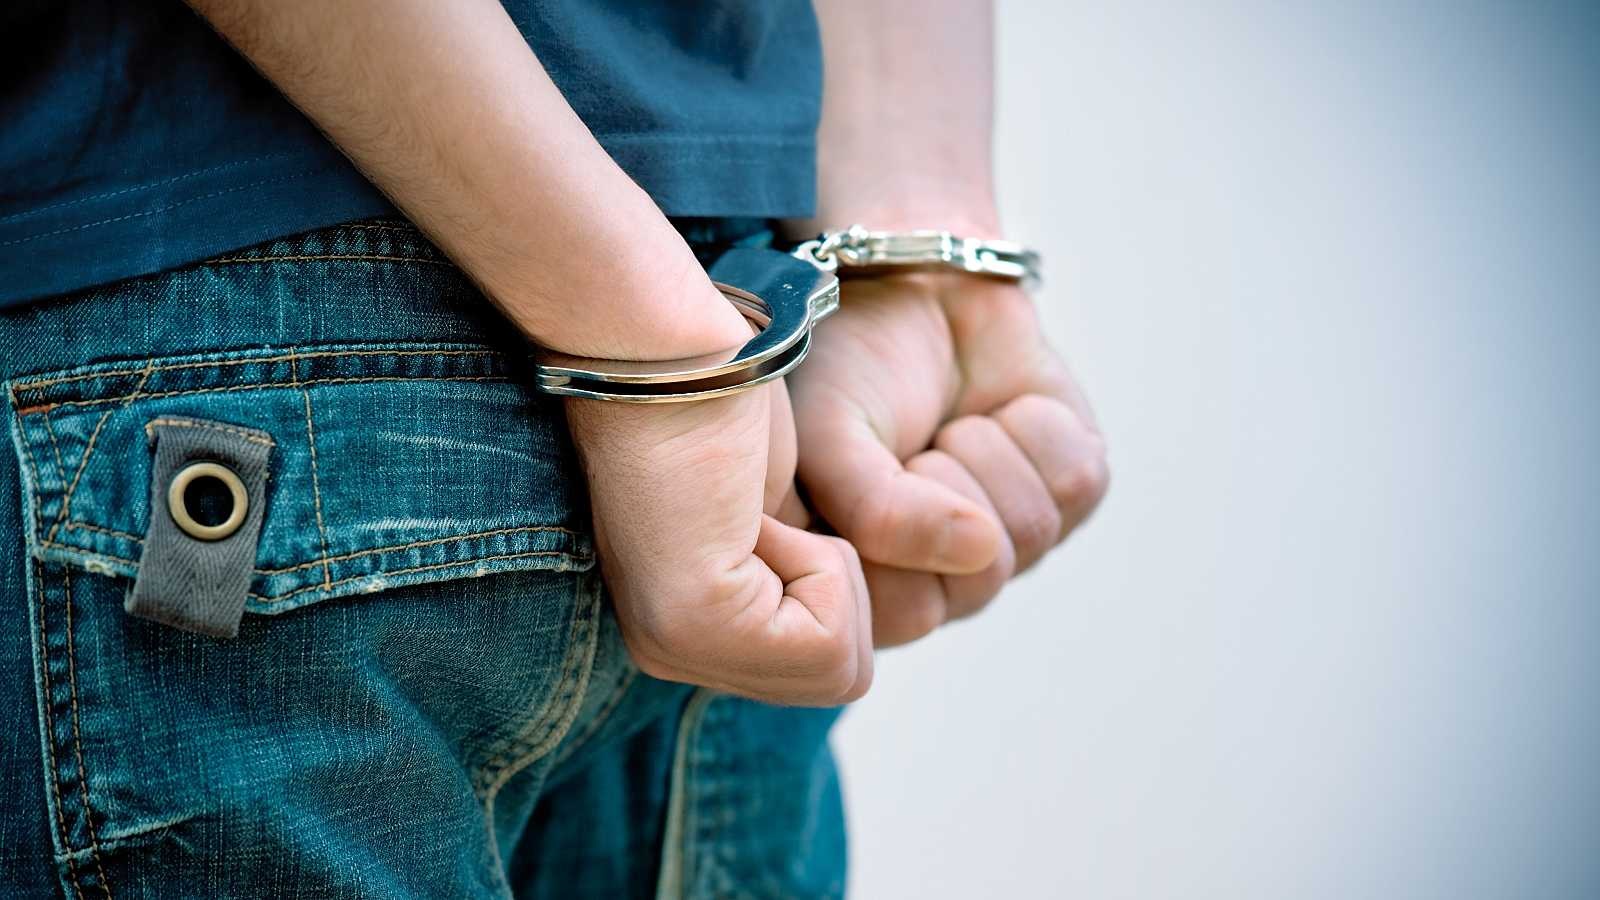 Sentencian a cadena perpetua a adolescente de 15 años por homicidios